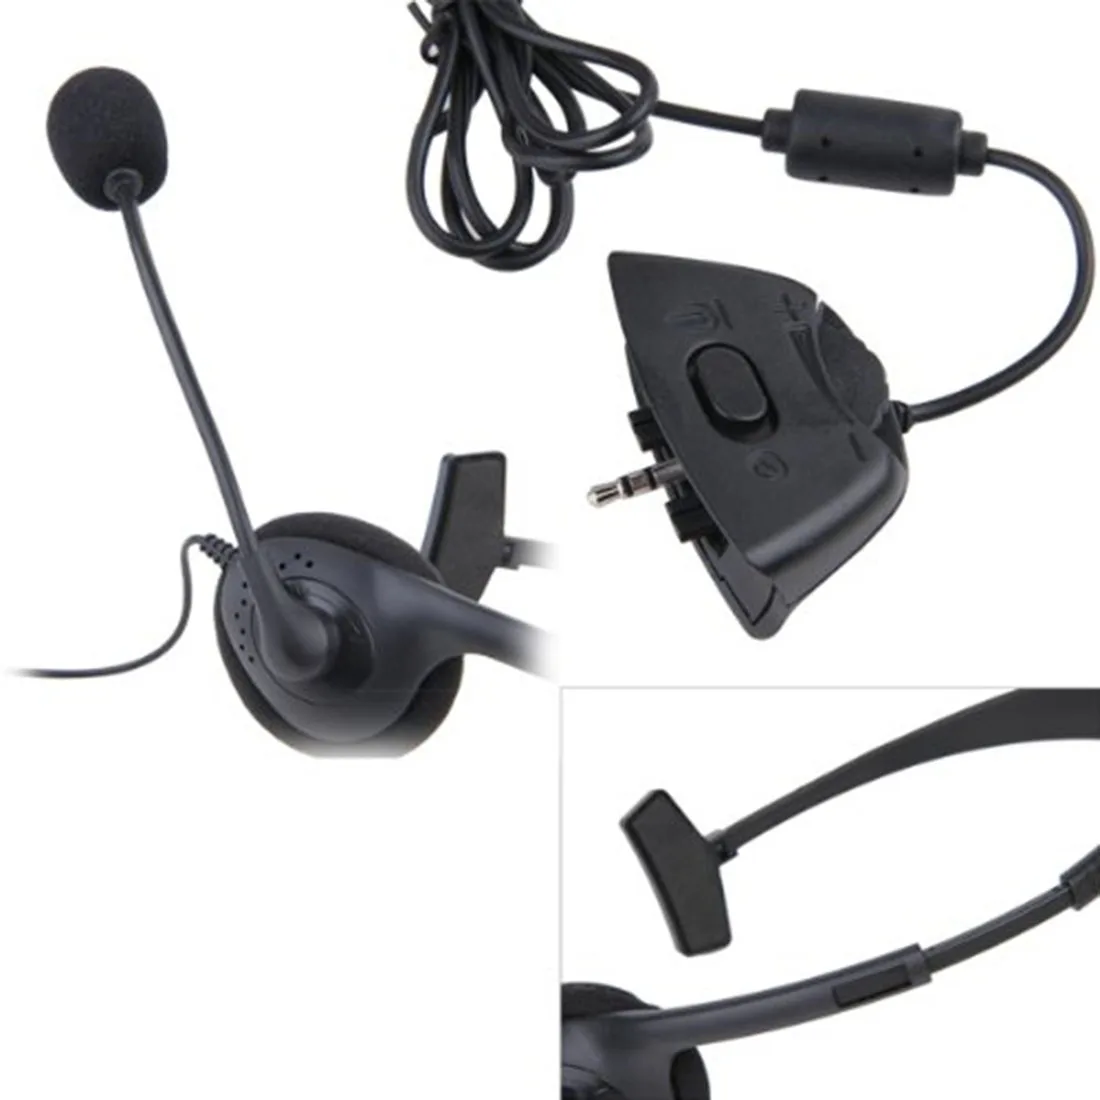 Marsnaska черный видео игра гарнитура на одно ухо наушники с микрофоном Микрофон для Xbox 360 Xbox360